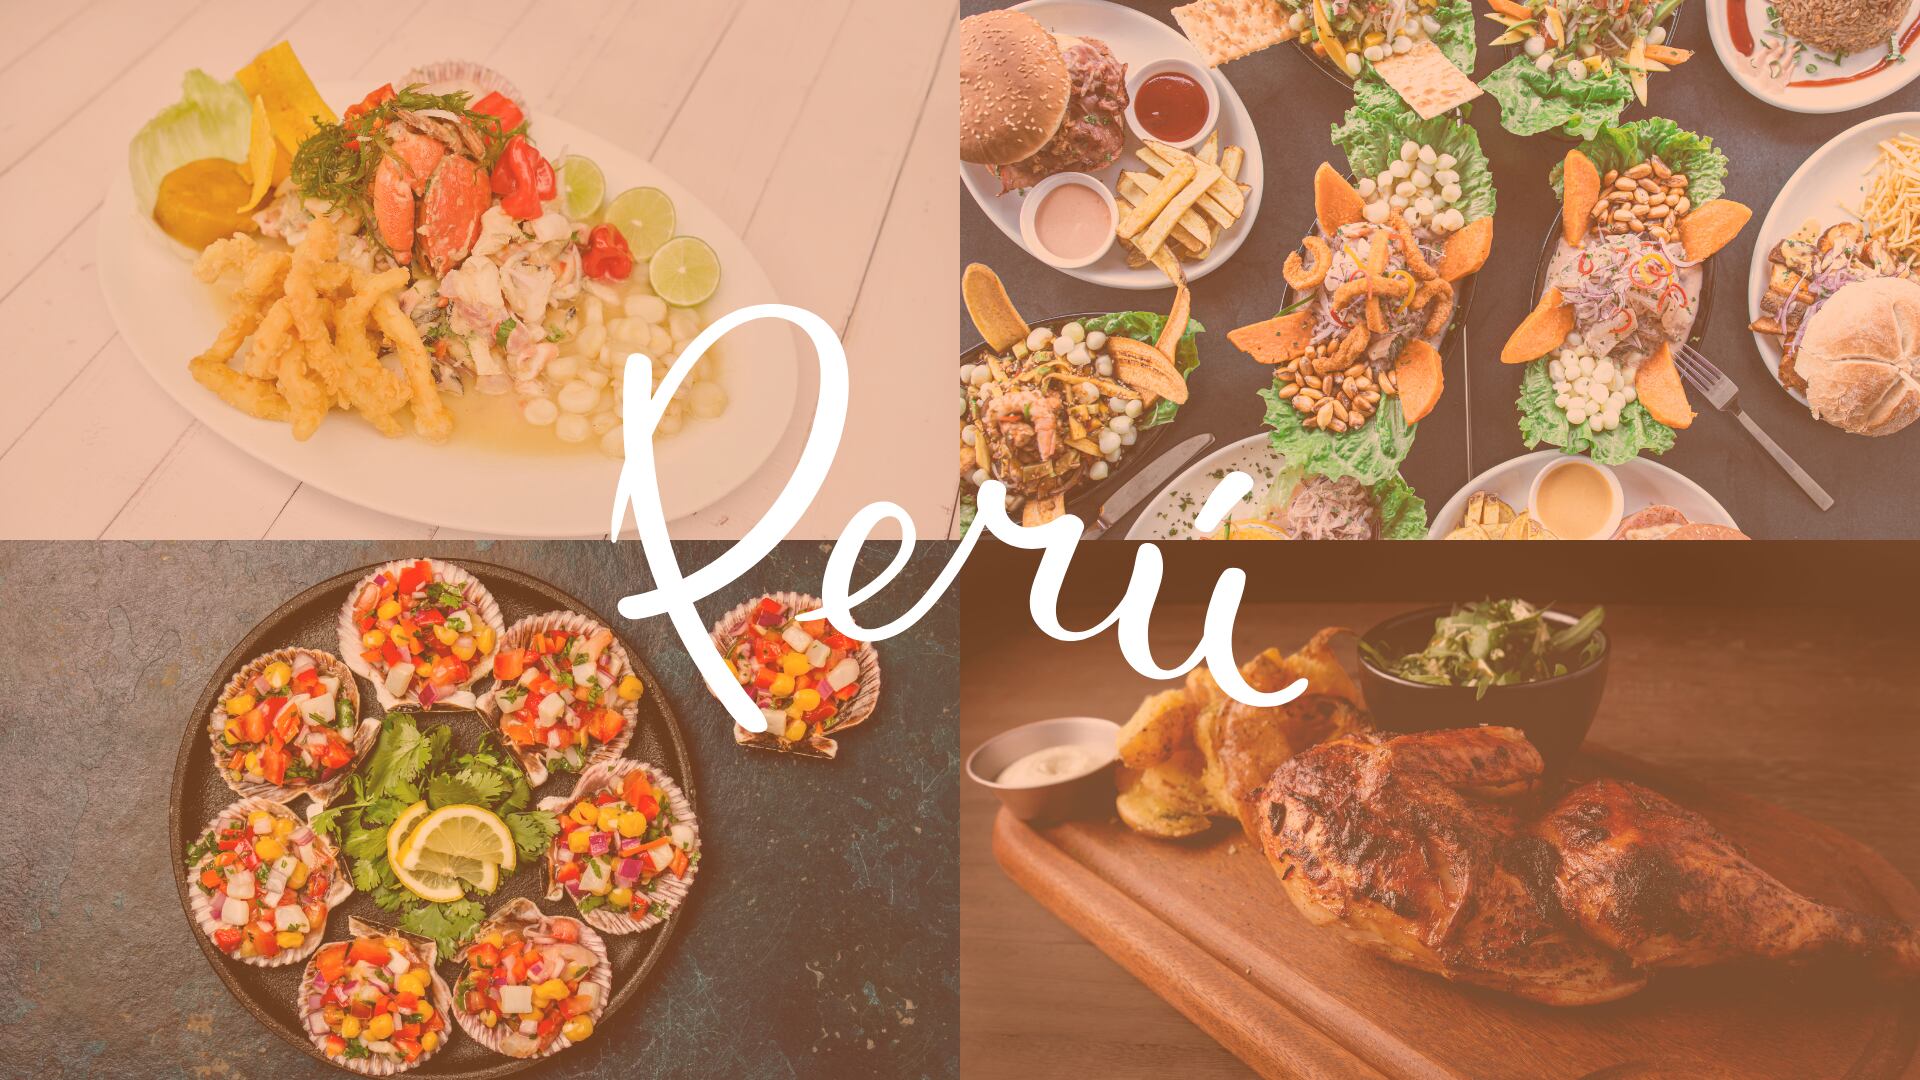 Gastronomía peruana brilla a nivel internacional: Estos son los cuatro platos bandera que destacan entre los 100 mejores en el mundo